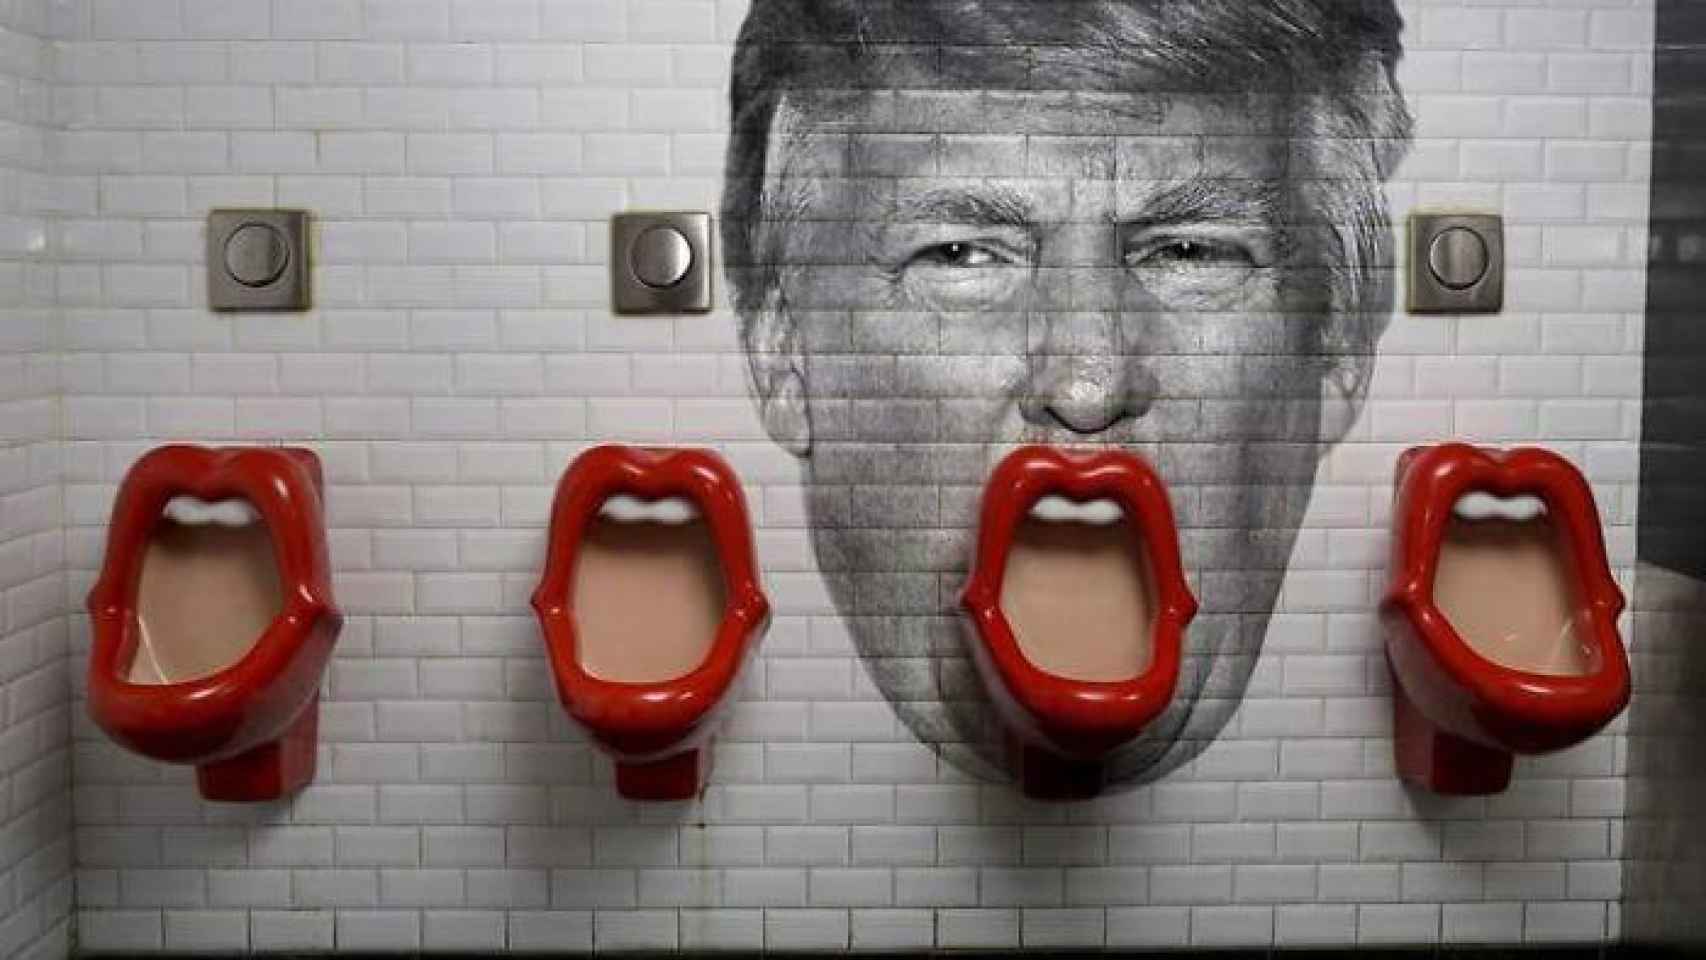 Montaje fotográfico realizado con la cara de Trump sobre unos urinarios.